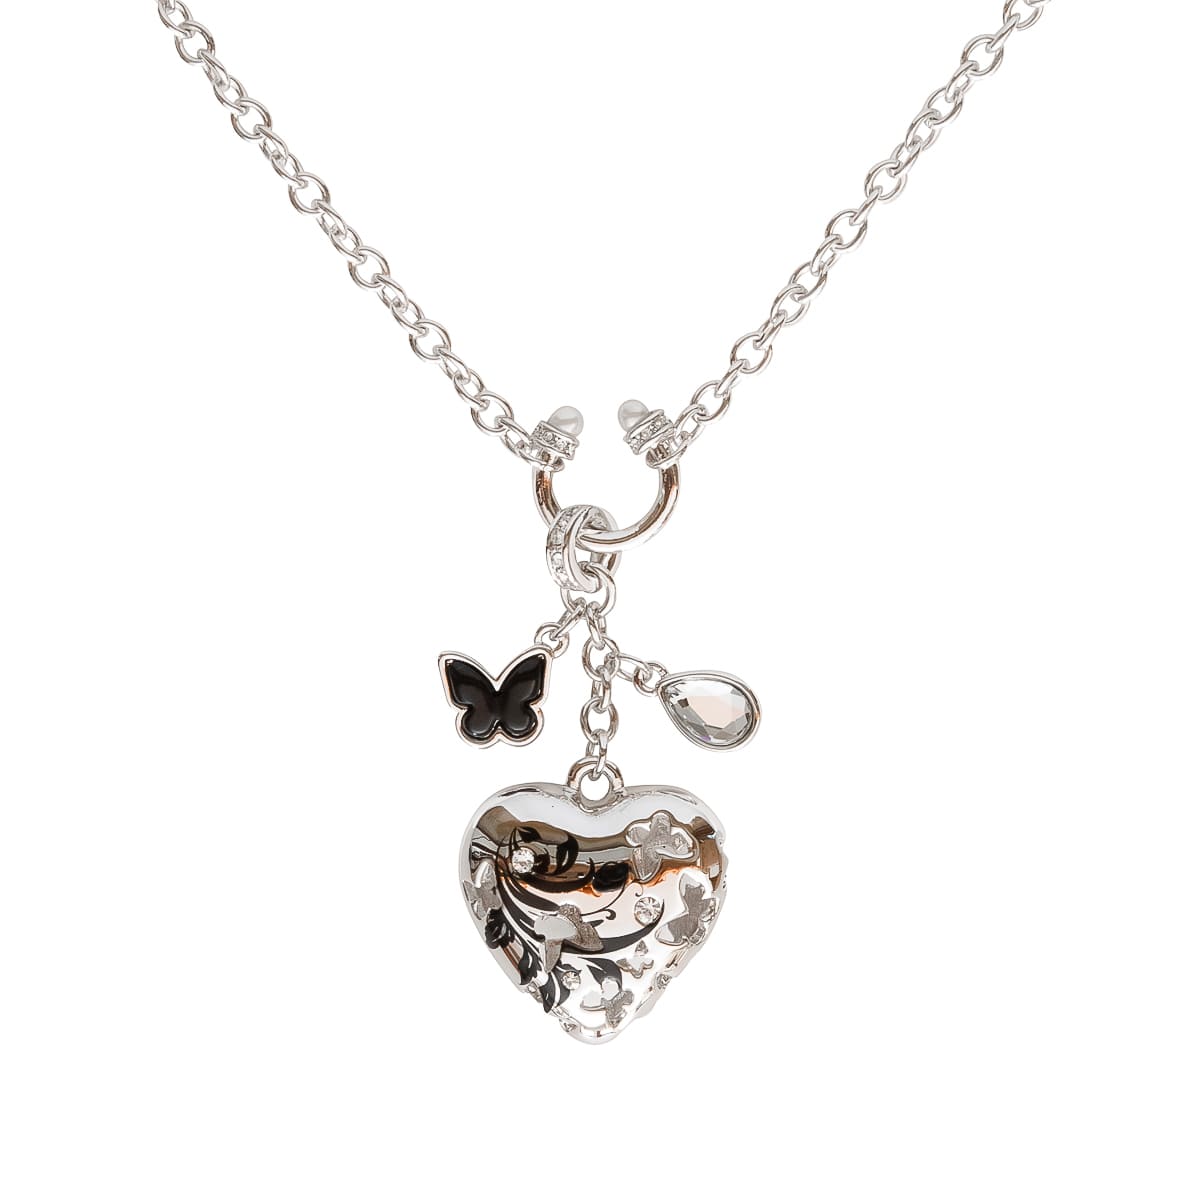 K.V. Fuchs Design Schmuck Damen Halskette in silber mit Schmetterling in schwarz und verzierter Anhänger Herz mit Zirkonia in weiß »K-2428«